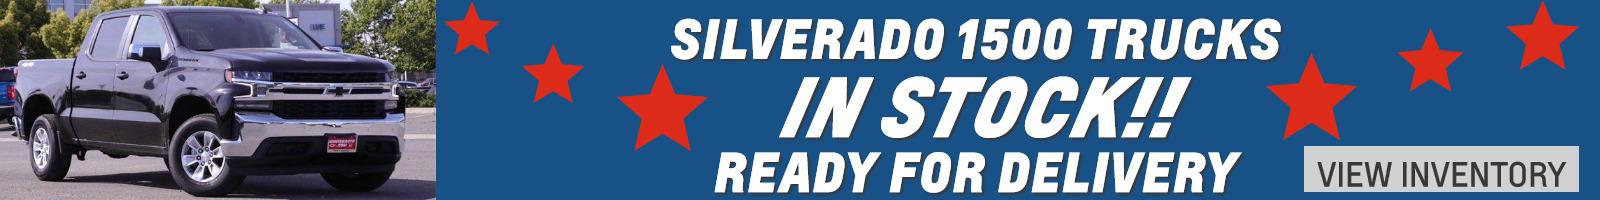 SILVERADO 1500 IN STOCK READY FOR DELIVERY.